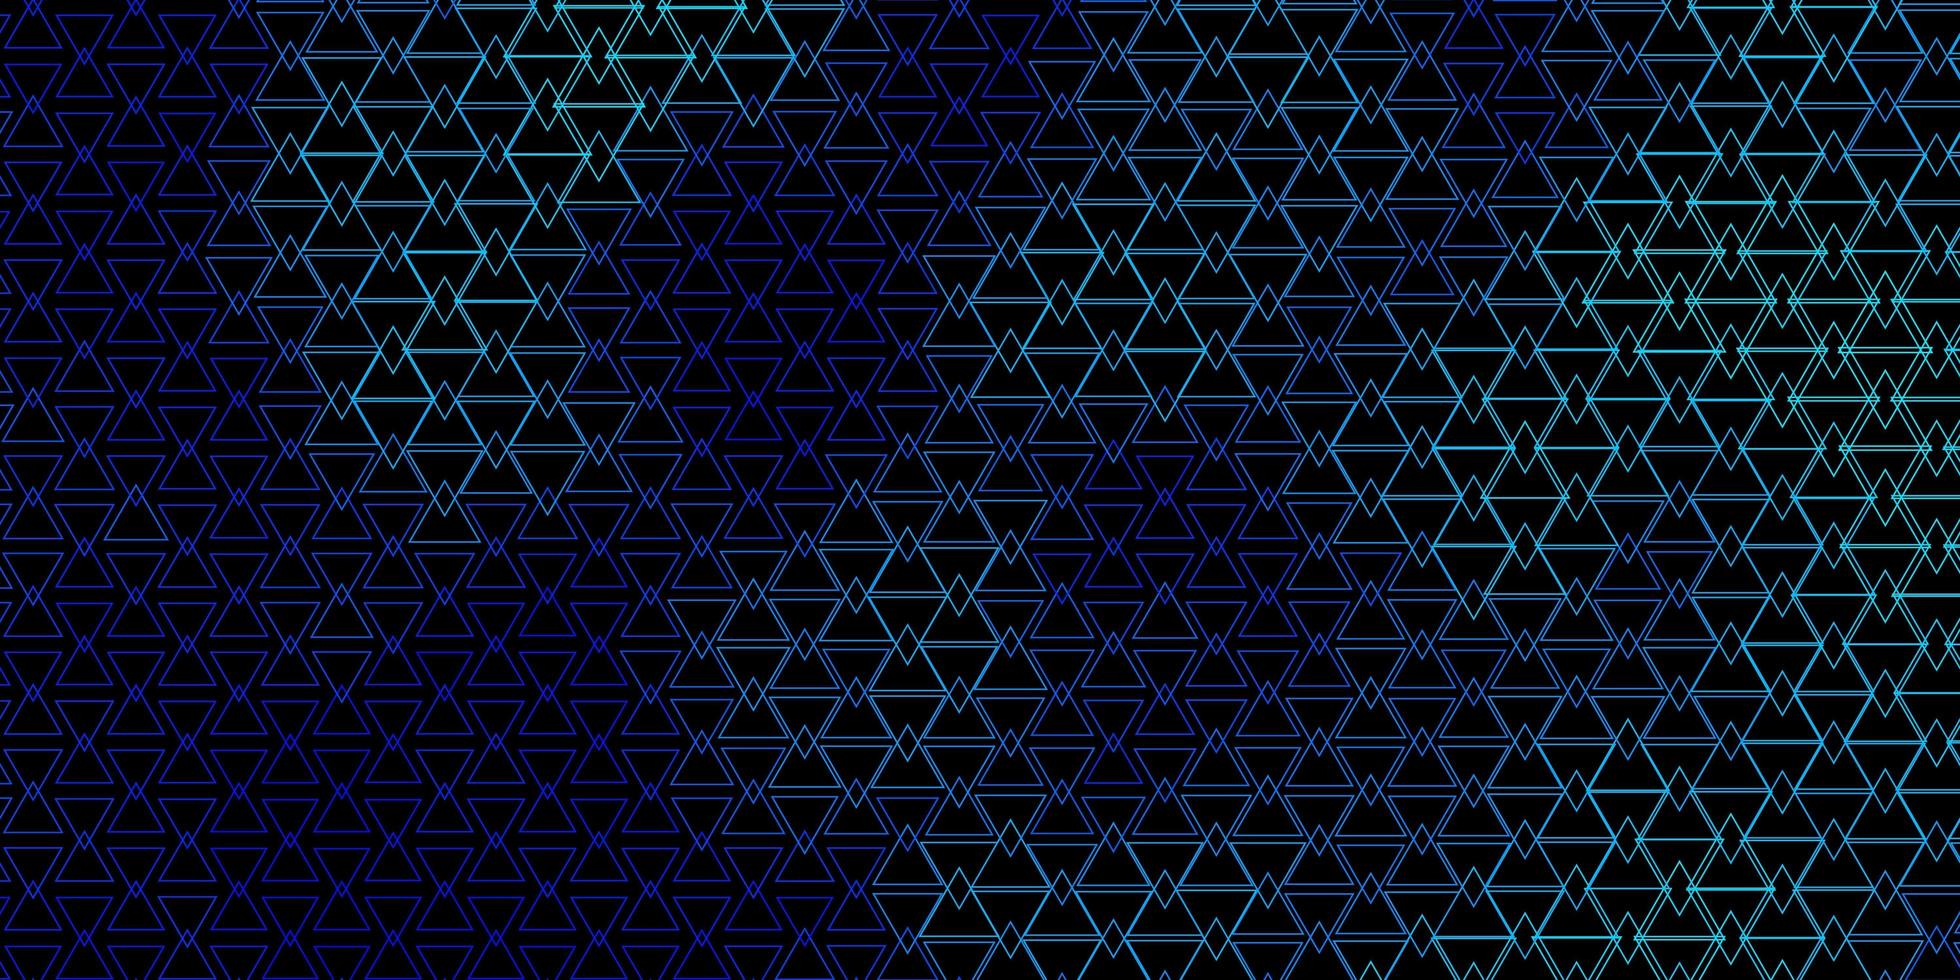 toile de fond de vecteur bleu foncé avec des lignes, des triangles. illustration abstraite brillante avec des triangles colorés. modèle pour les fonds d'écran.